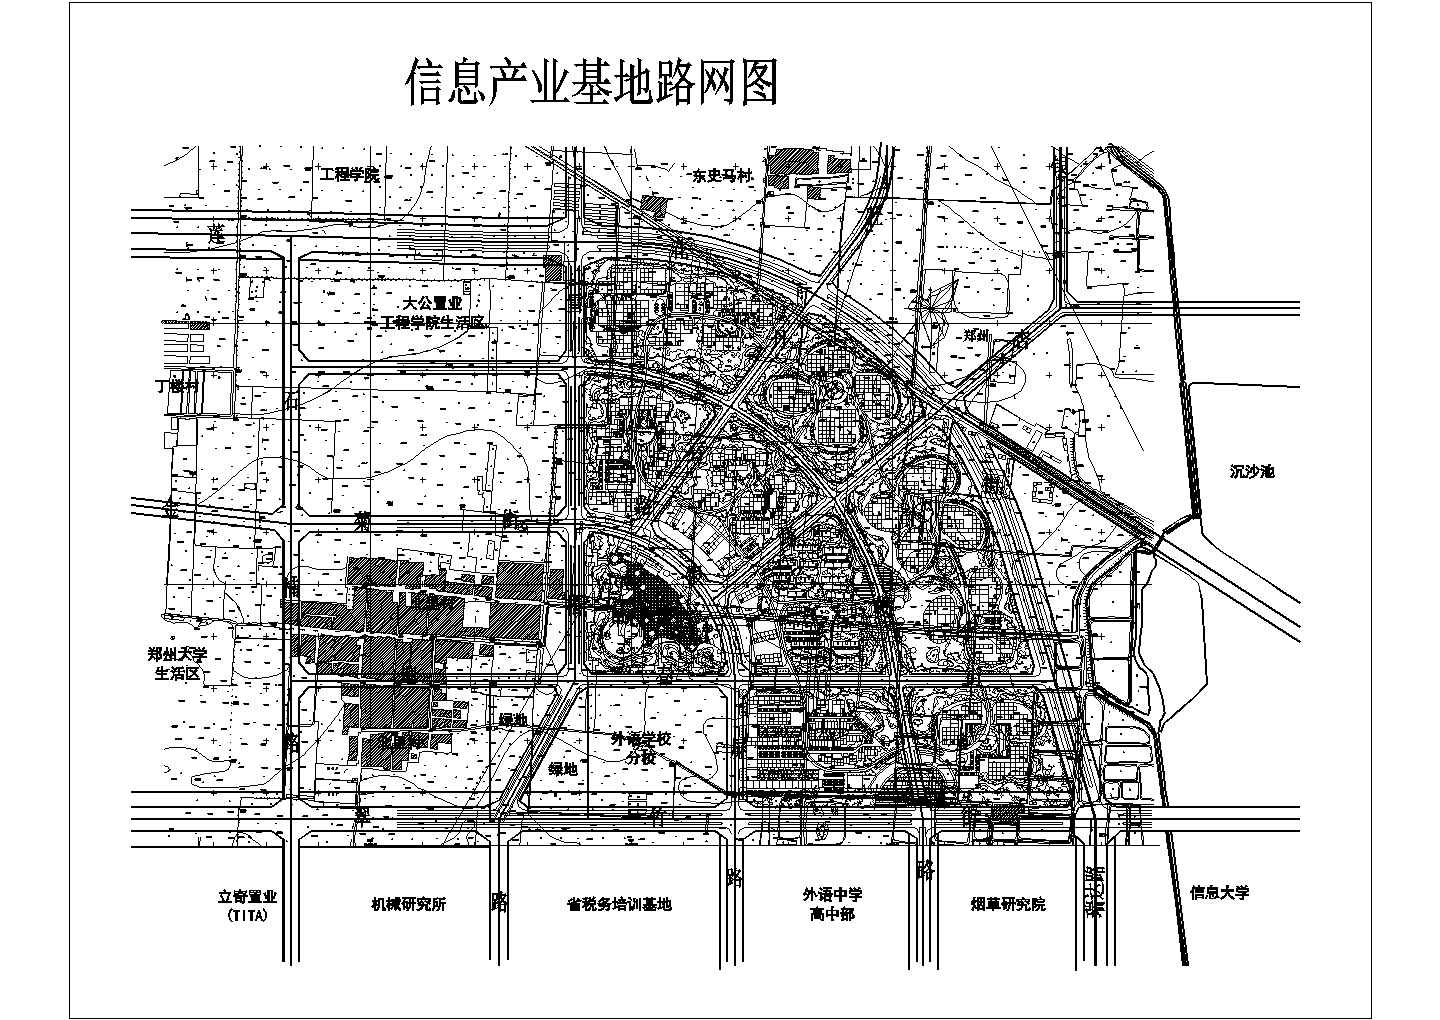 郑州某信息产业基地路网规划图纸